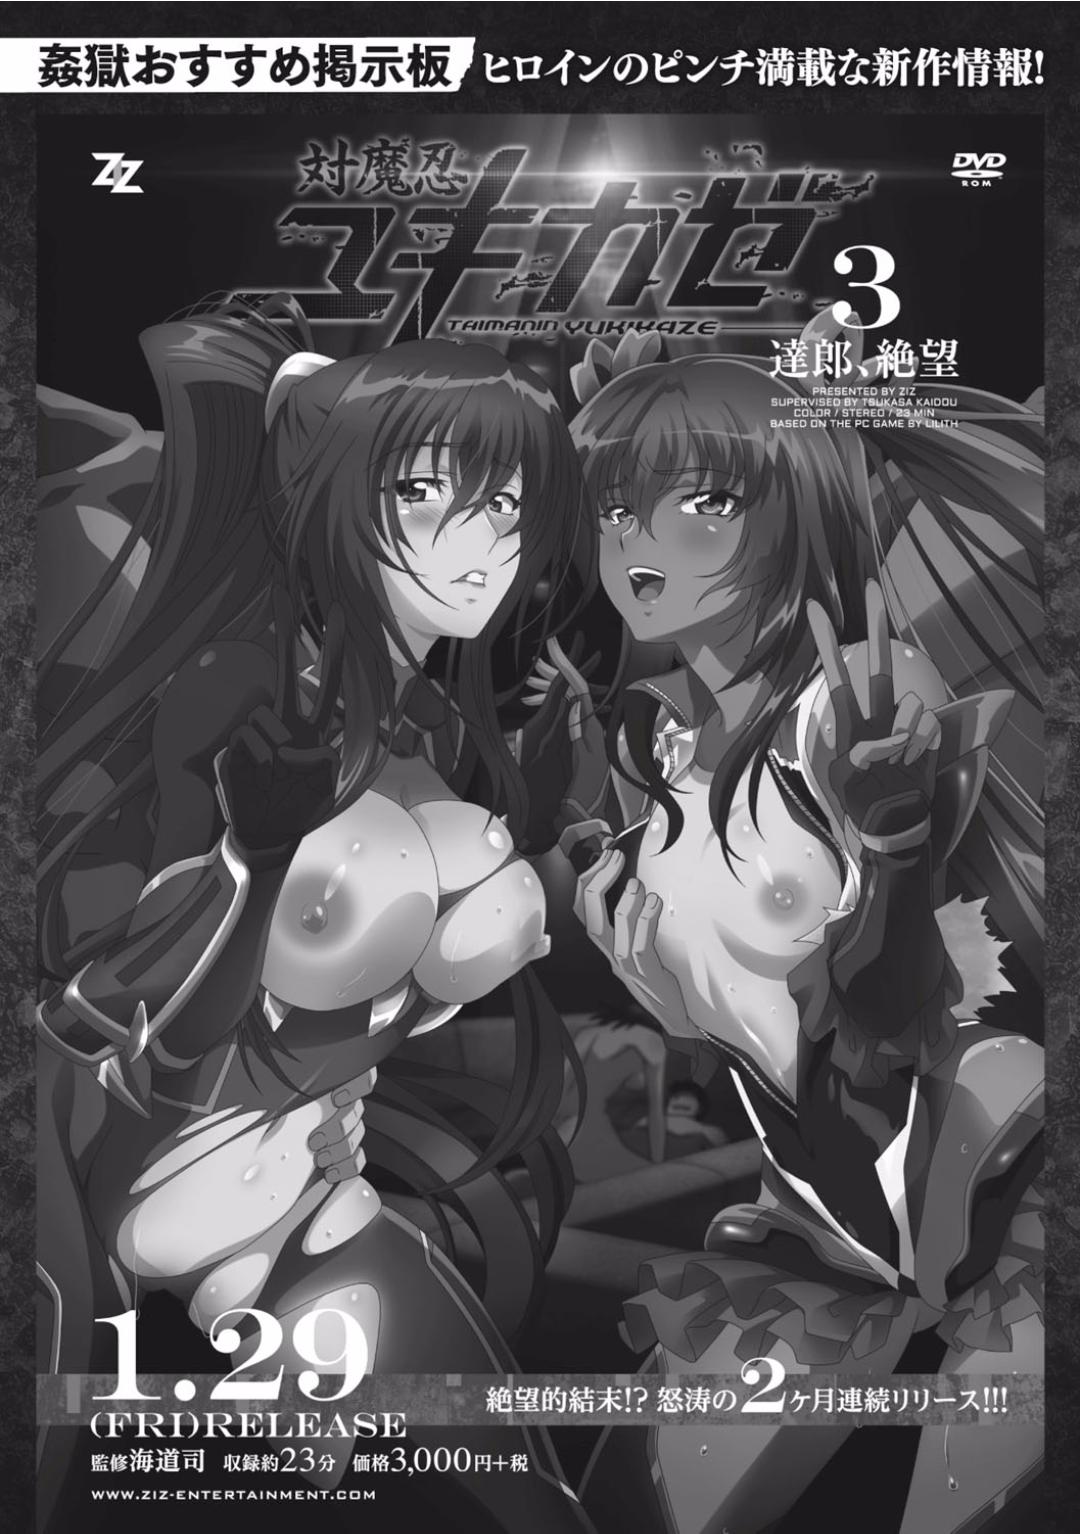 Seigi no Heroine Kangoku File Vol. 2 3